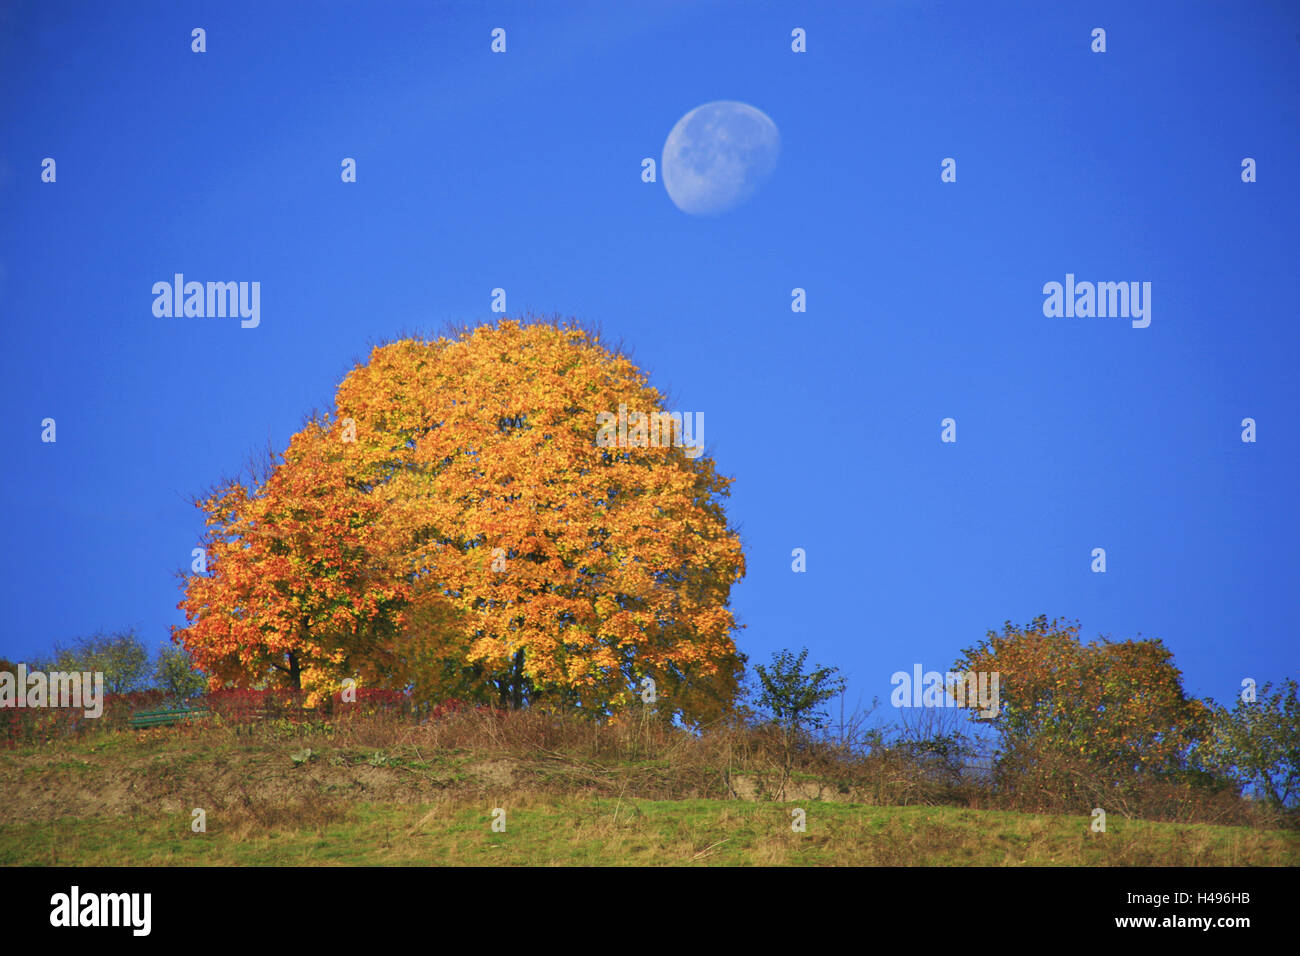 Luna sobre un árbol de arce tintado amarillo radiante, Foto de stock